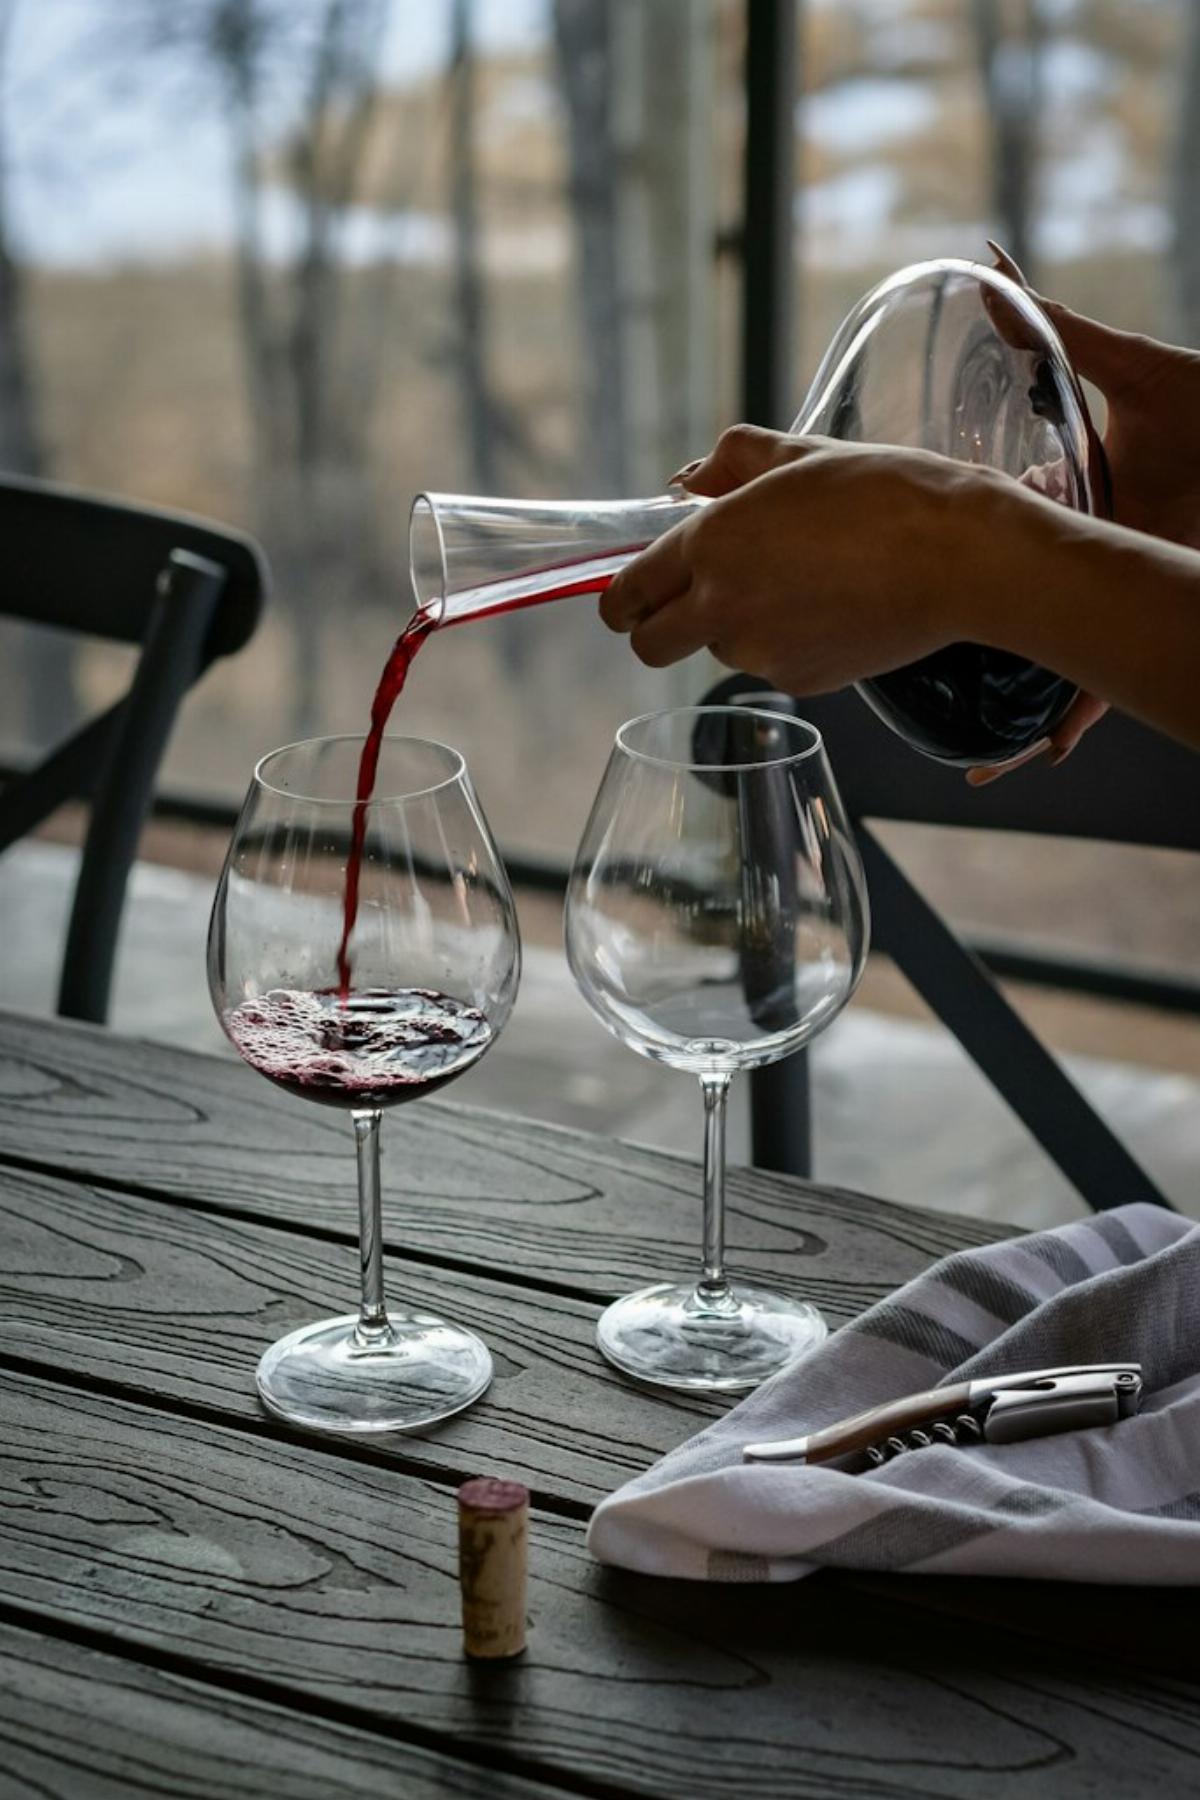 Le temps de décantation a son importance lors d'une dégustation de vin